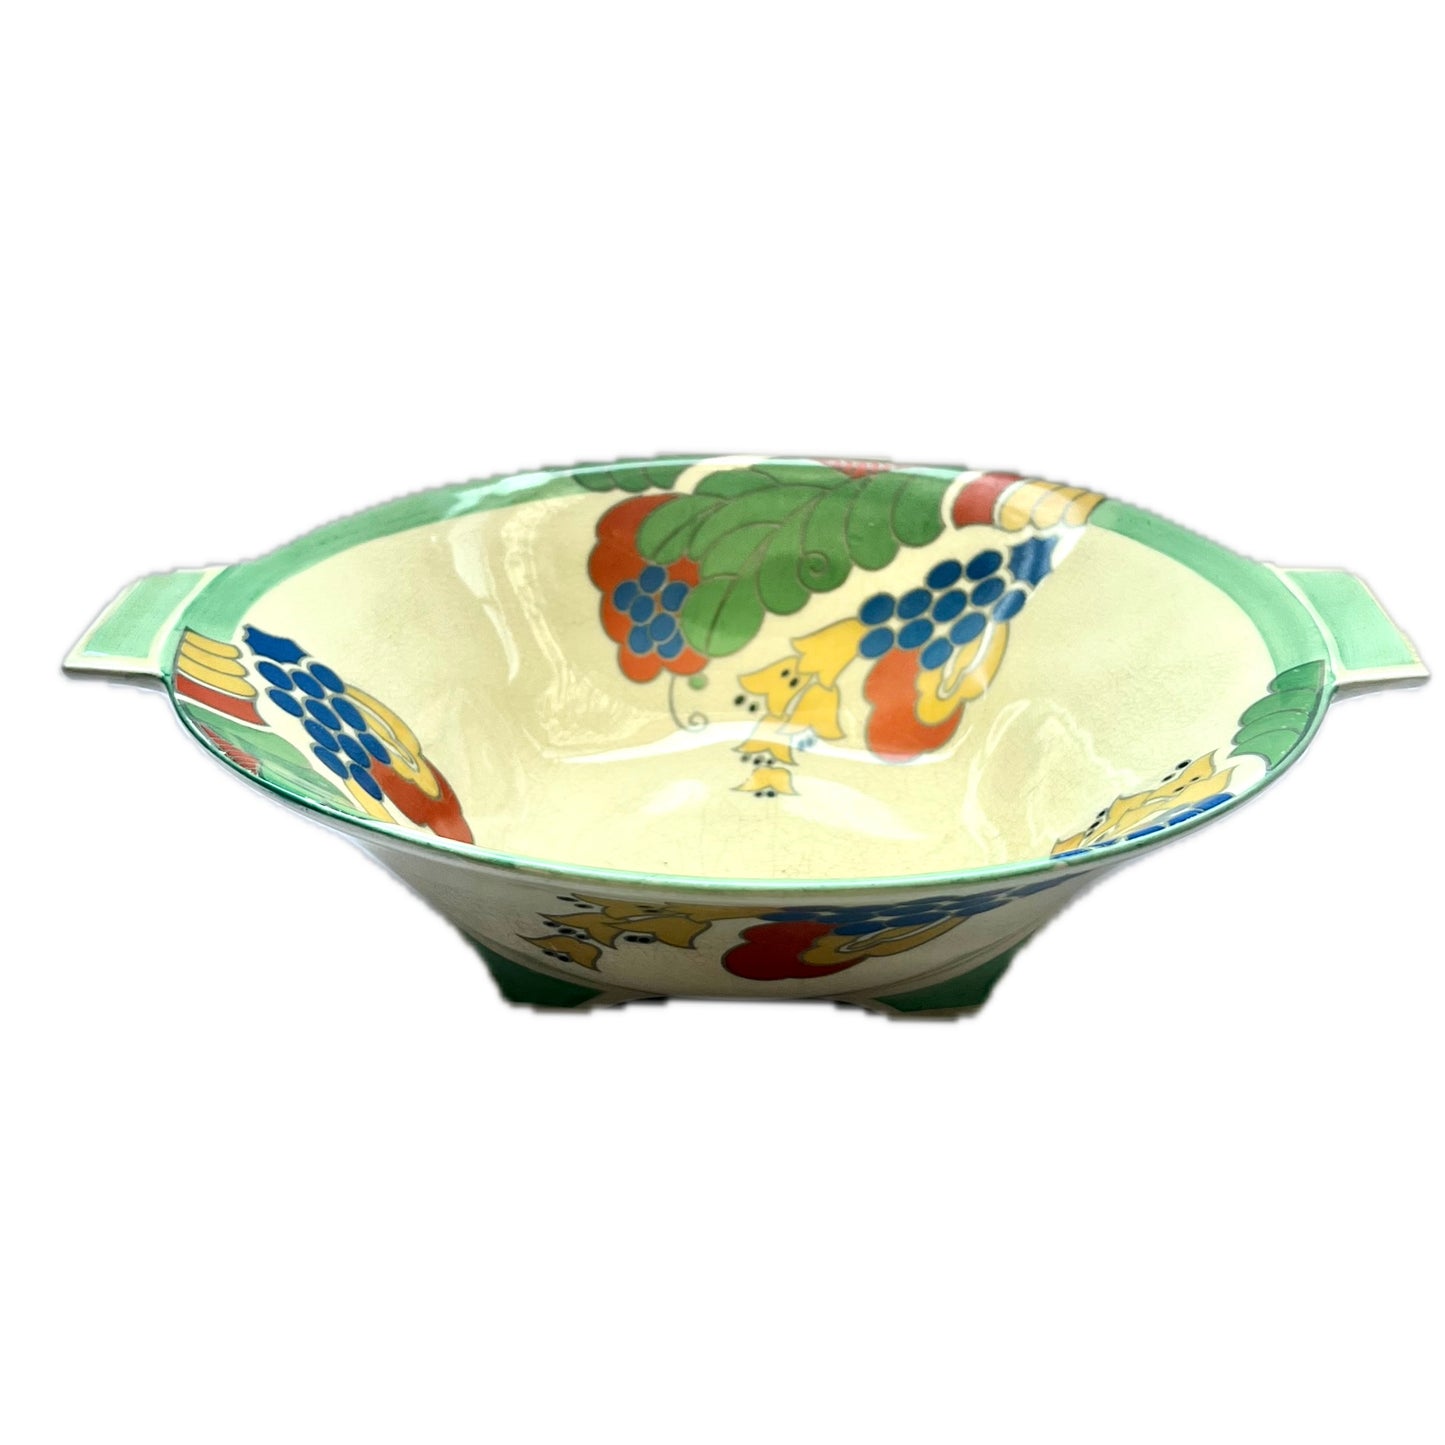 20 世纪 30 年代皇家道尔顿装饰艺术风格瓷器餐碗，采用 Caprice 图案